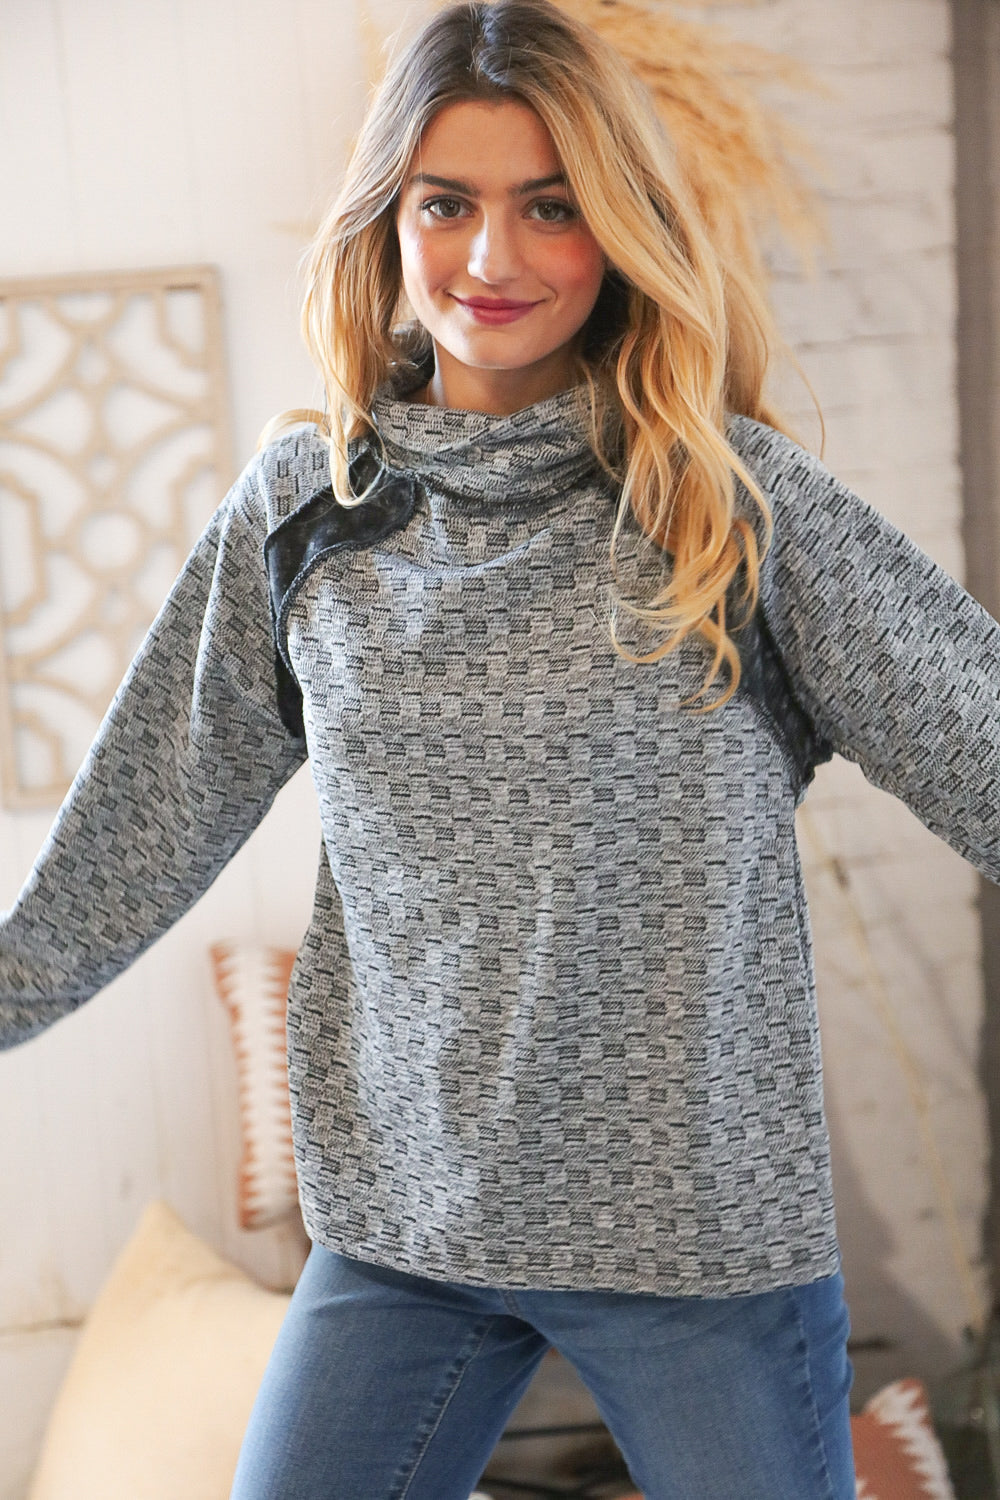 Grey Turtleneck Textured Jacquard Sweater Top